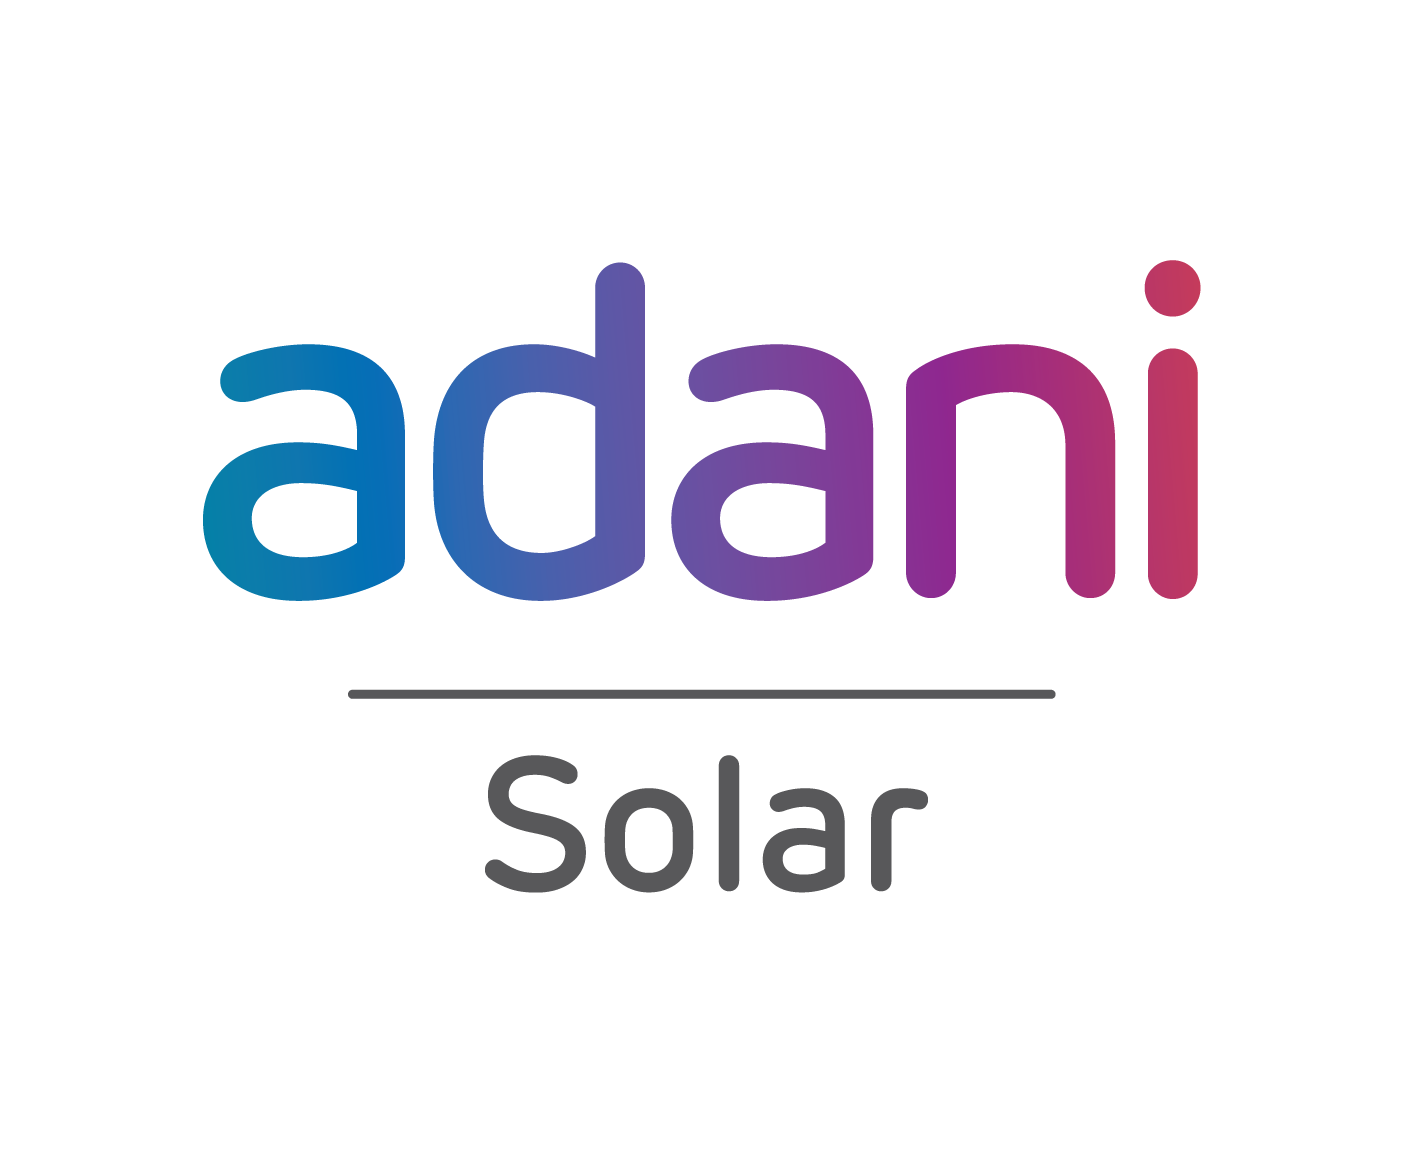 Adani Green Energy PNG Image